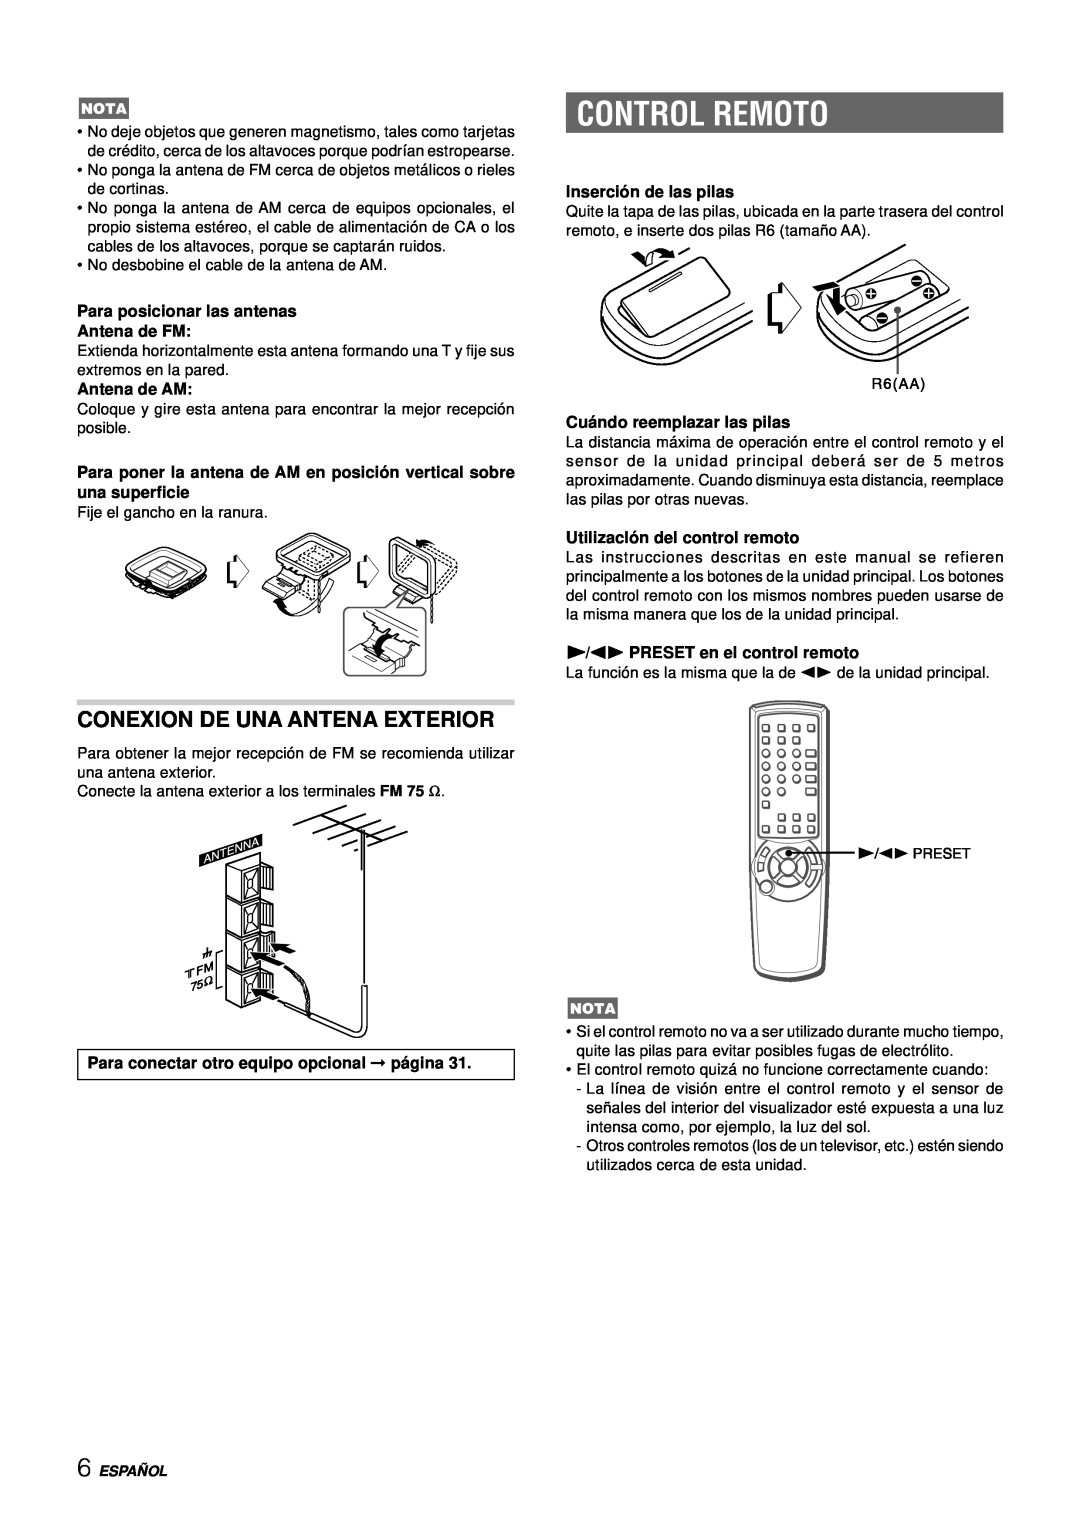 Aiwa NSX-DS8 manual Control Remoto, Conexion De Una Antena Exterior, Para posicionar las antenas Antena de FM, Antena de AM 